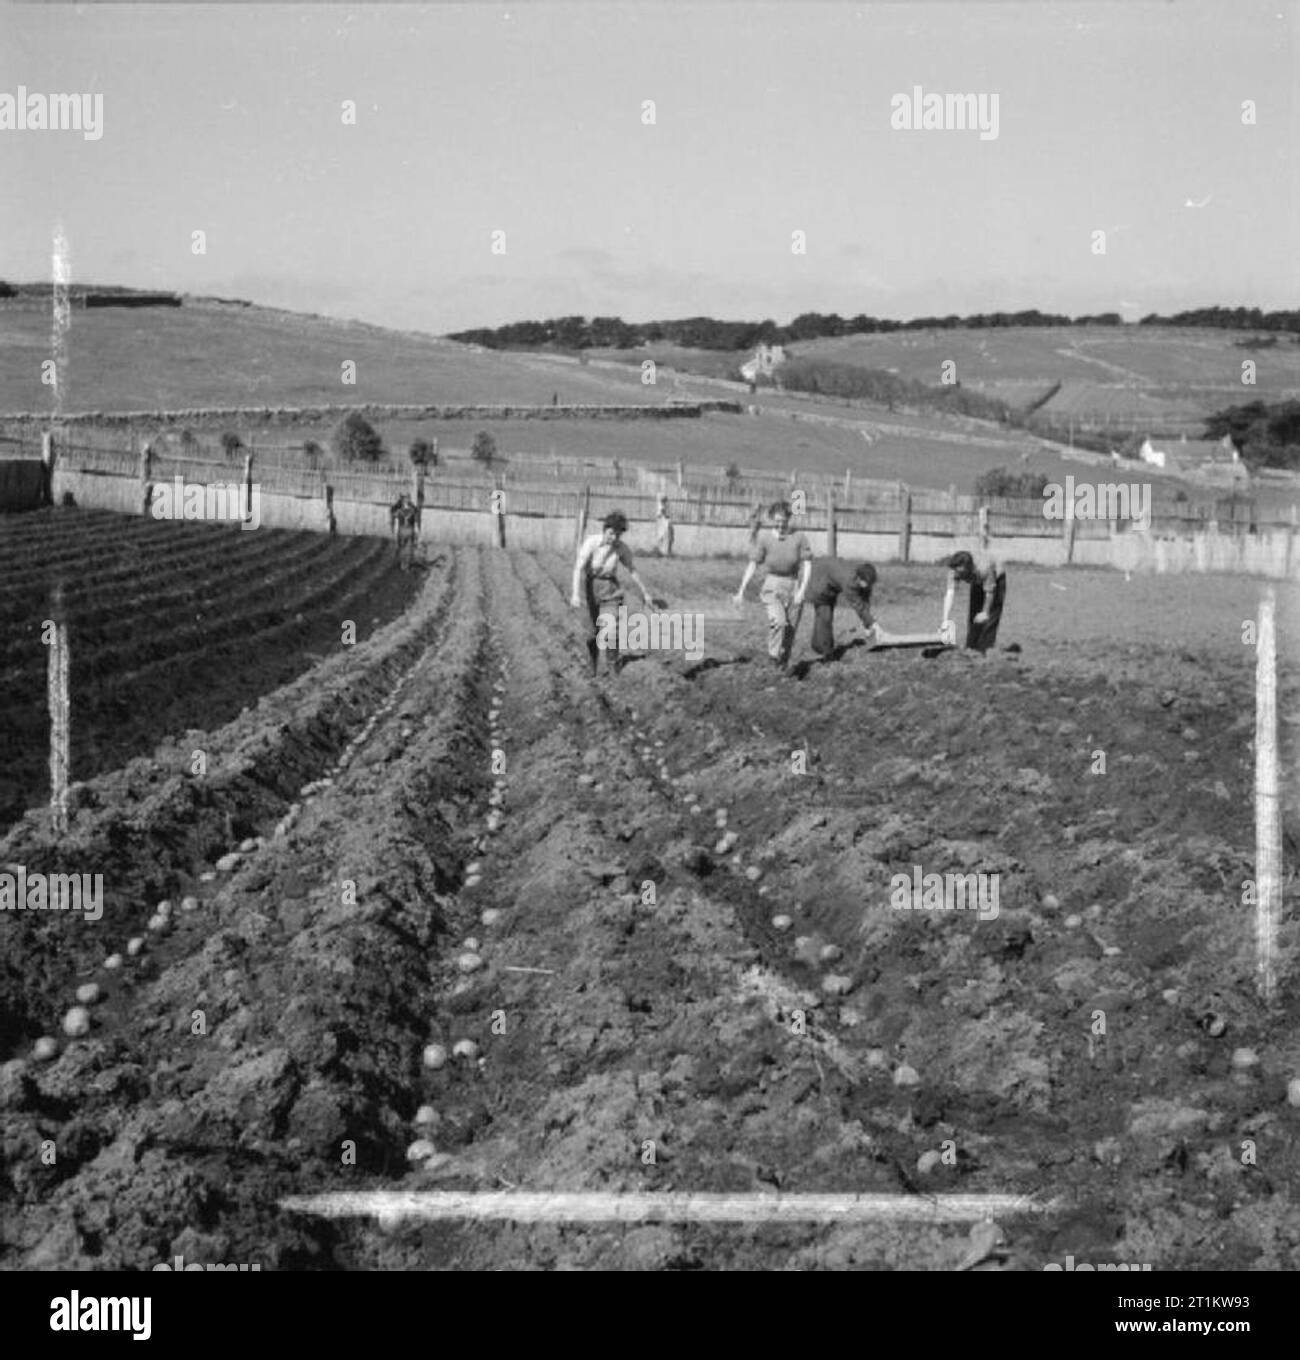 En temps de guerre les Scillies- la vie quotidienne sur les îles Scilly, 1941 Quatre membres de la Women's Land Army (WLA) planter des pommes de terre dans un champ sur les pentes inférieures de la colline des ailettes, Îles Scilly Tresco, 1941. Derrière eux peut être vue collines, champs et maisons de la ville de Dauphin. Banque D'Images